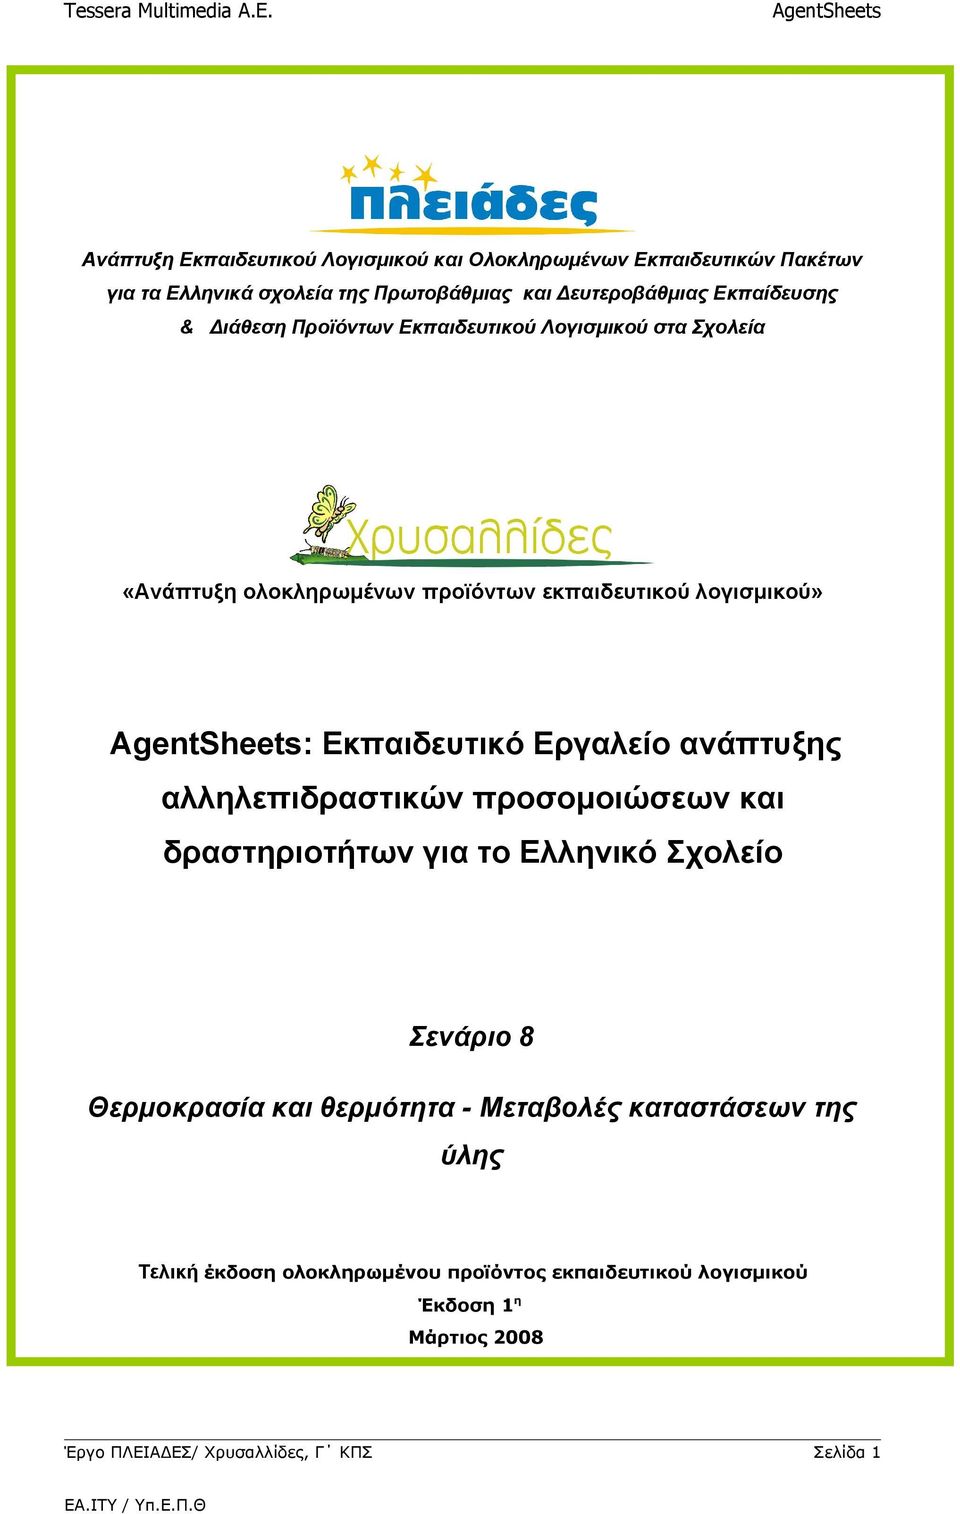 Εκπαιδευτικό Εργαλείο ανάπτυξης αλληλεπιδραστικών προσομοιώσεων και δραστηριοτήτων για το Ελληνικό Σχολείο Σενάριο 8 Θερμοκρασία και